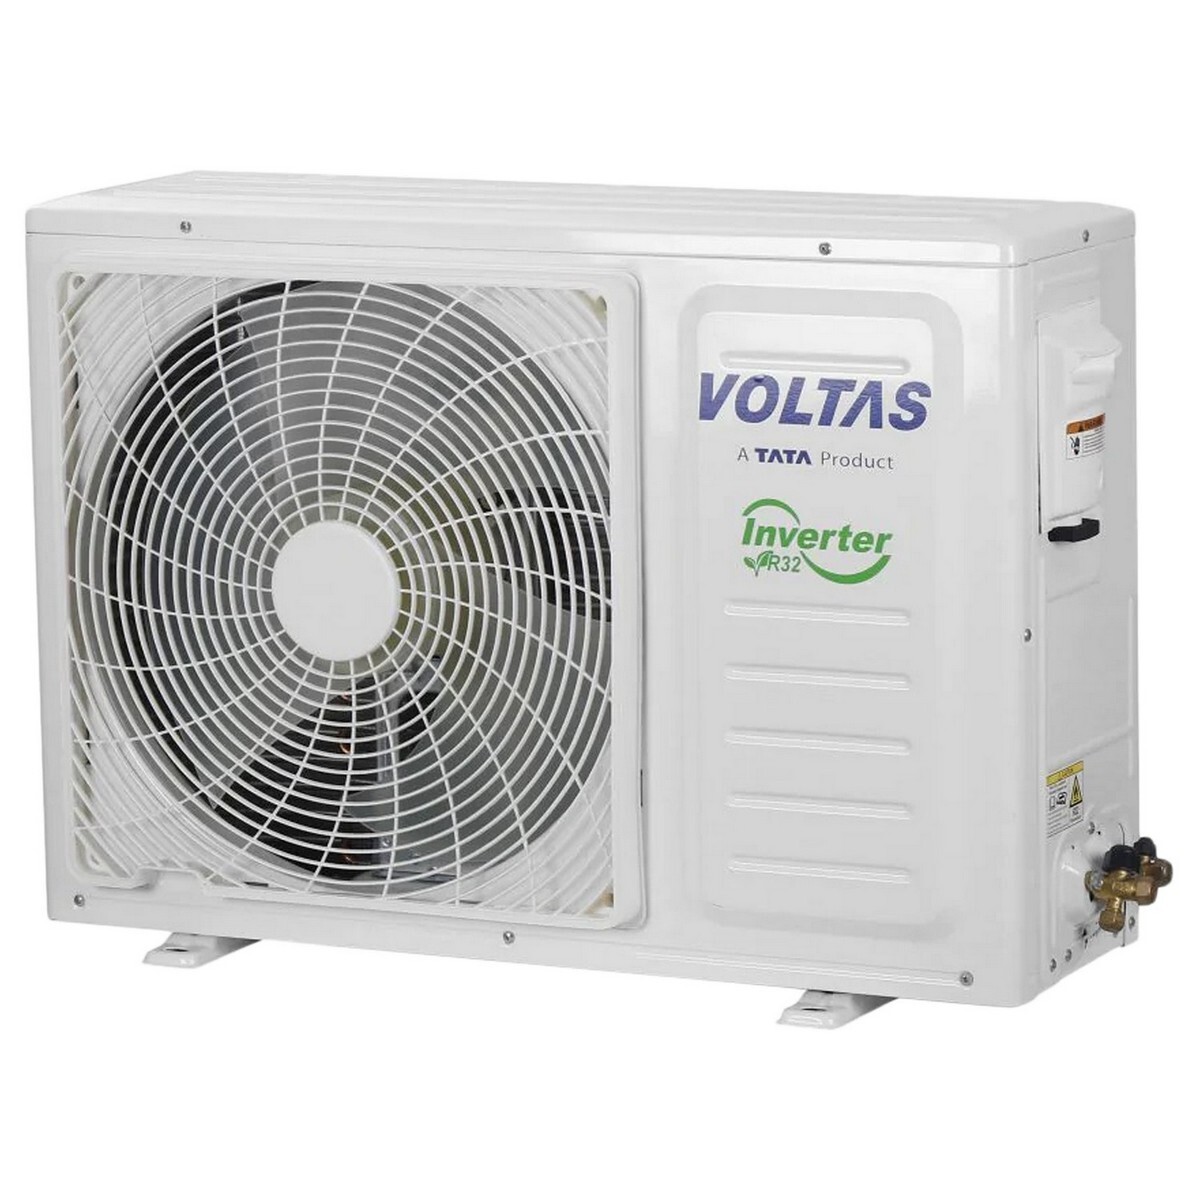 Voltas Inverter Air Conditioner 123v Vectra Pride 1 Ton 3 Star